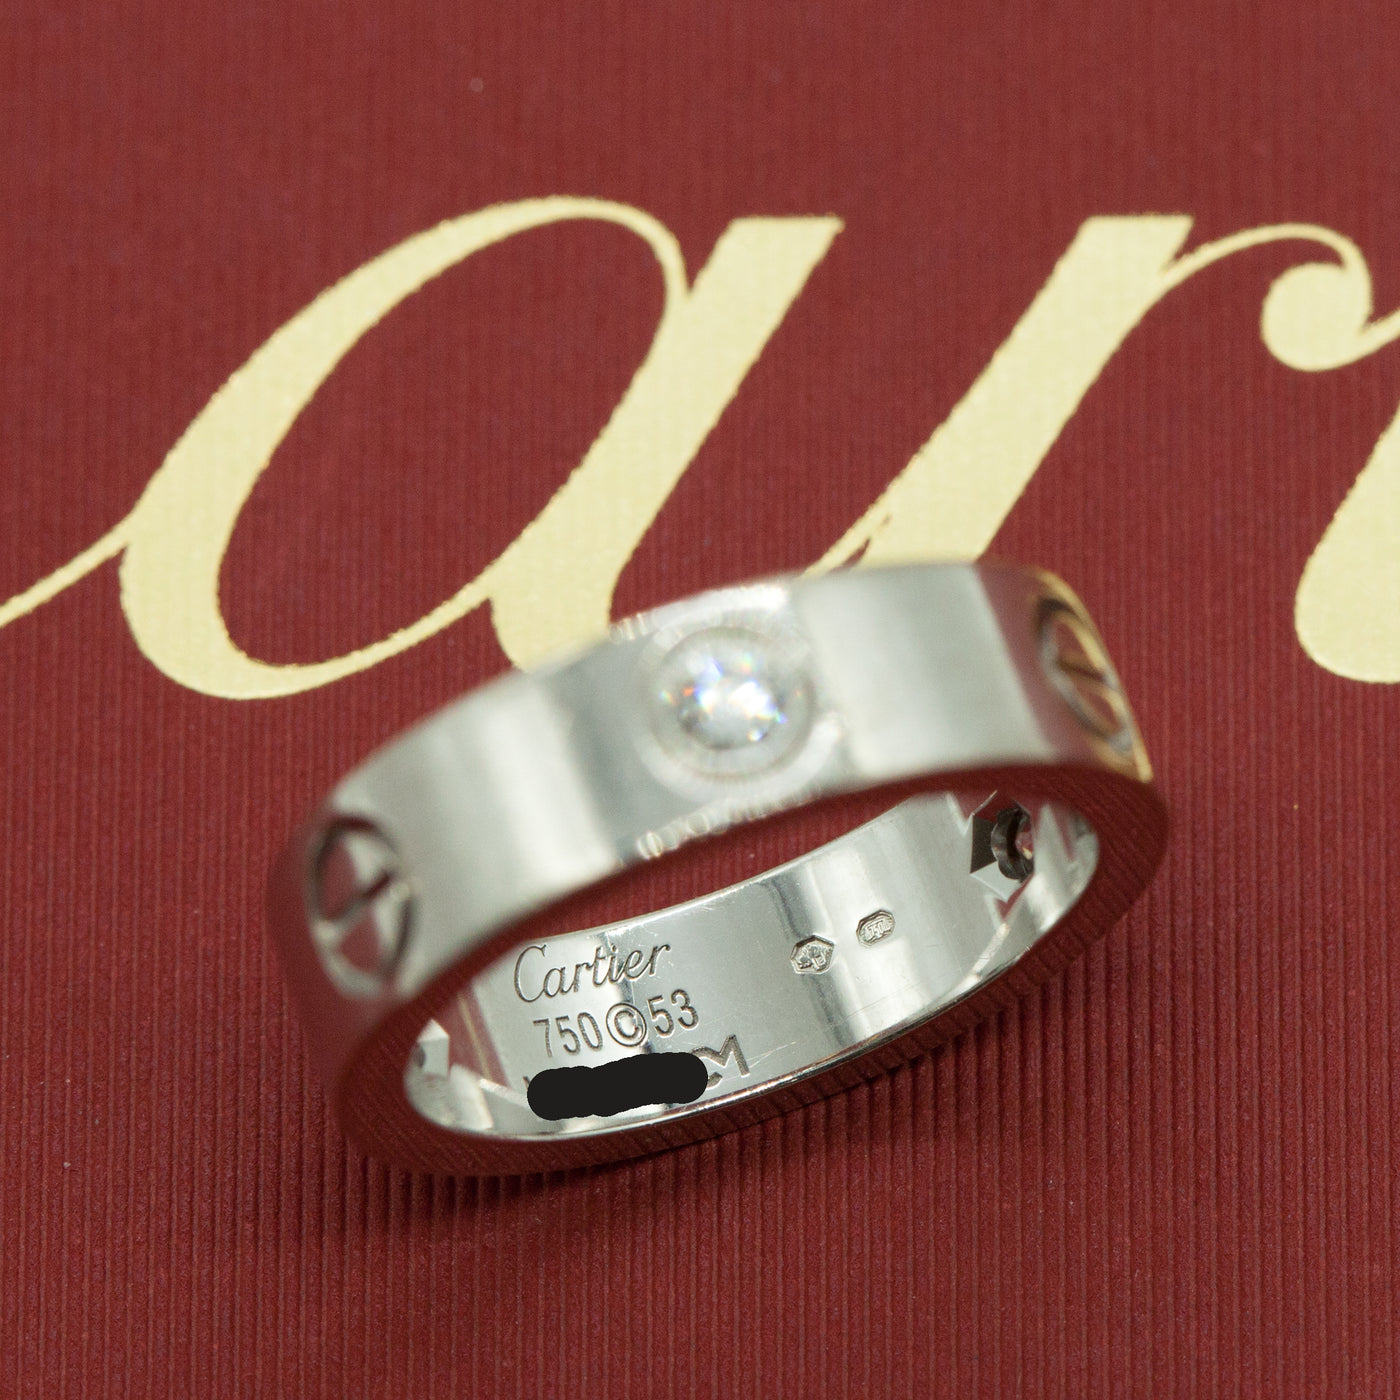 Van Cleef & Arpels 18K Rose Gold Perlee Ring-NYShowplace